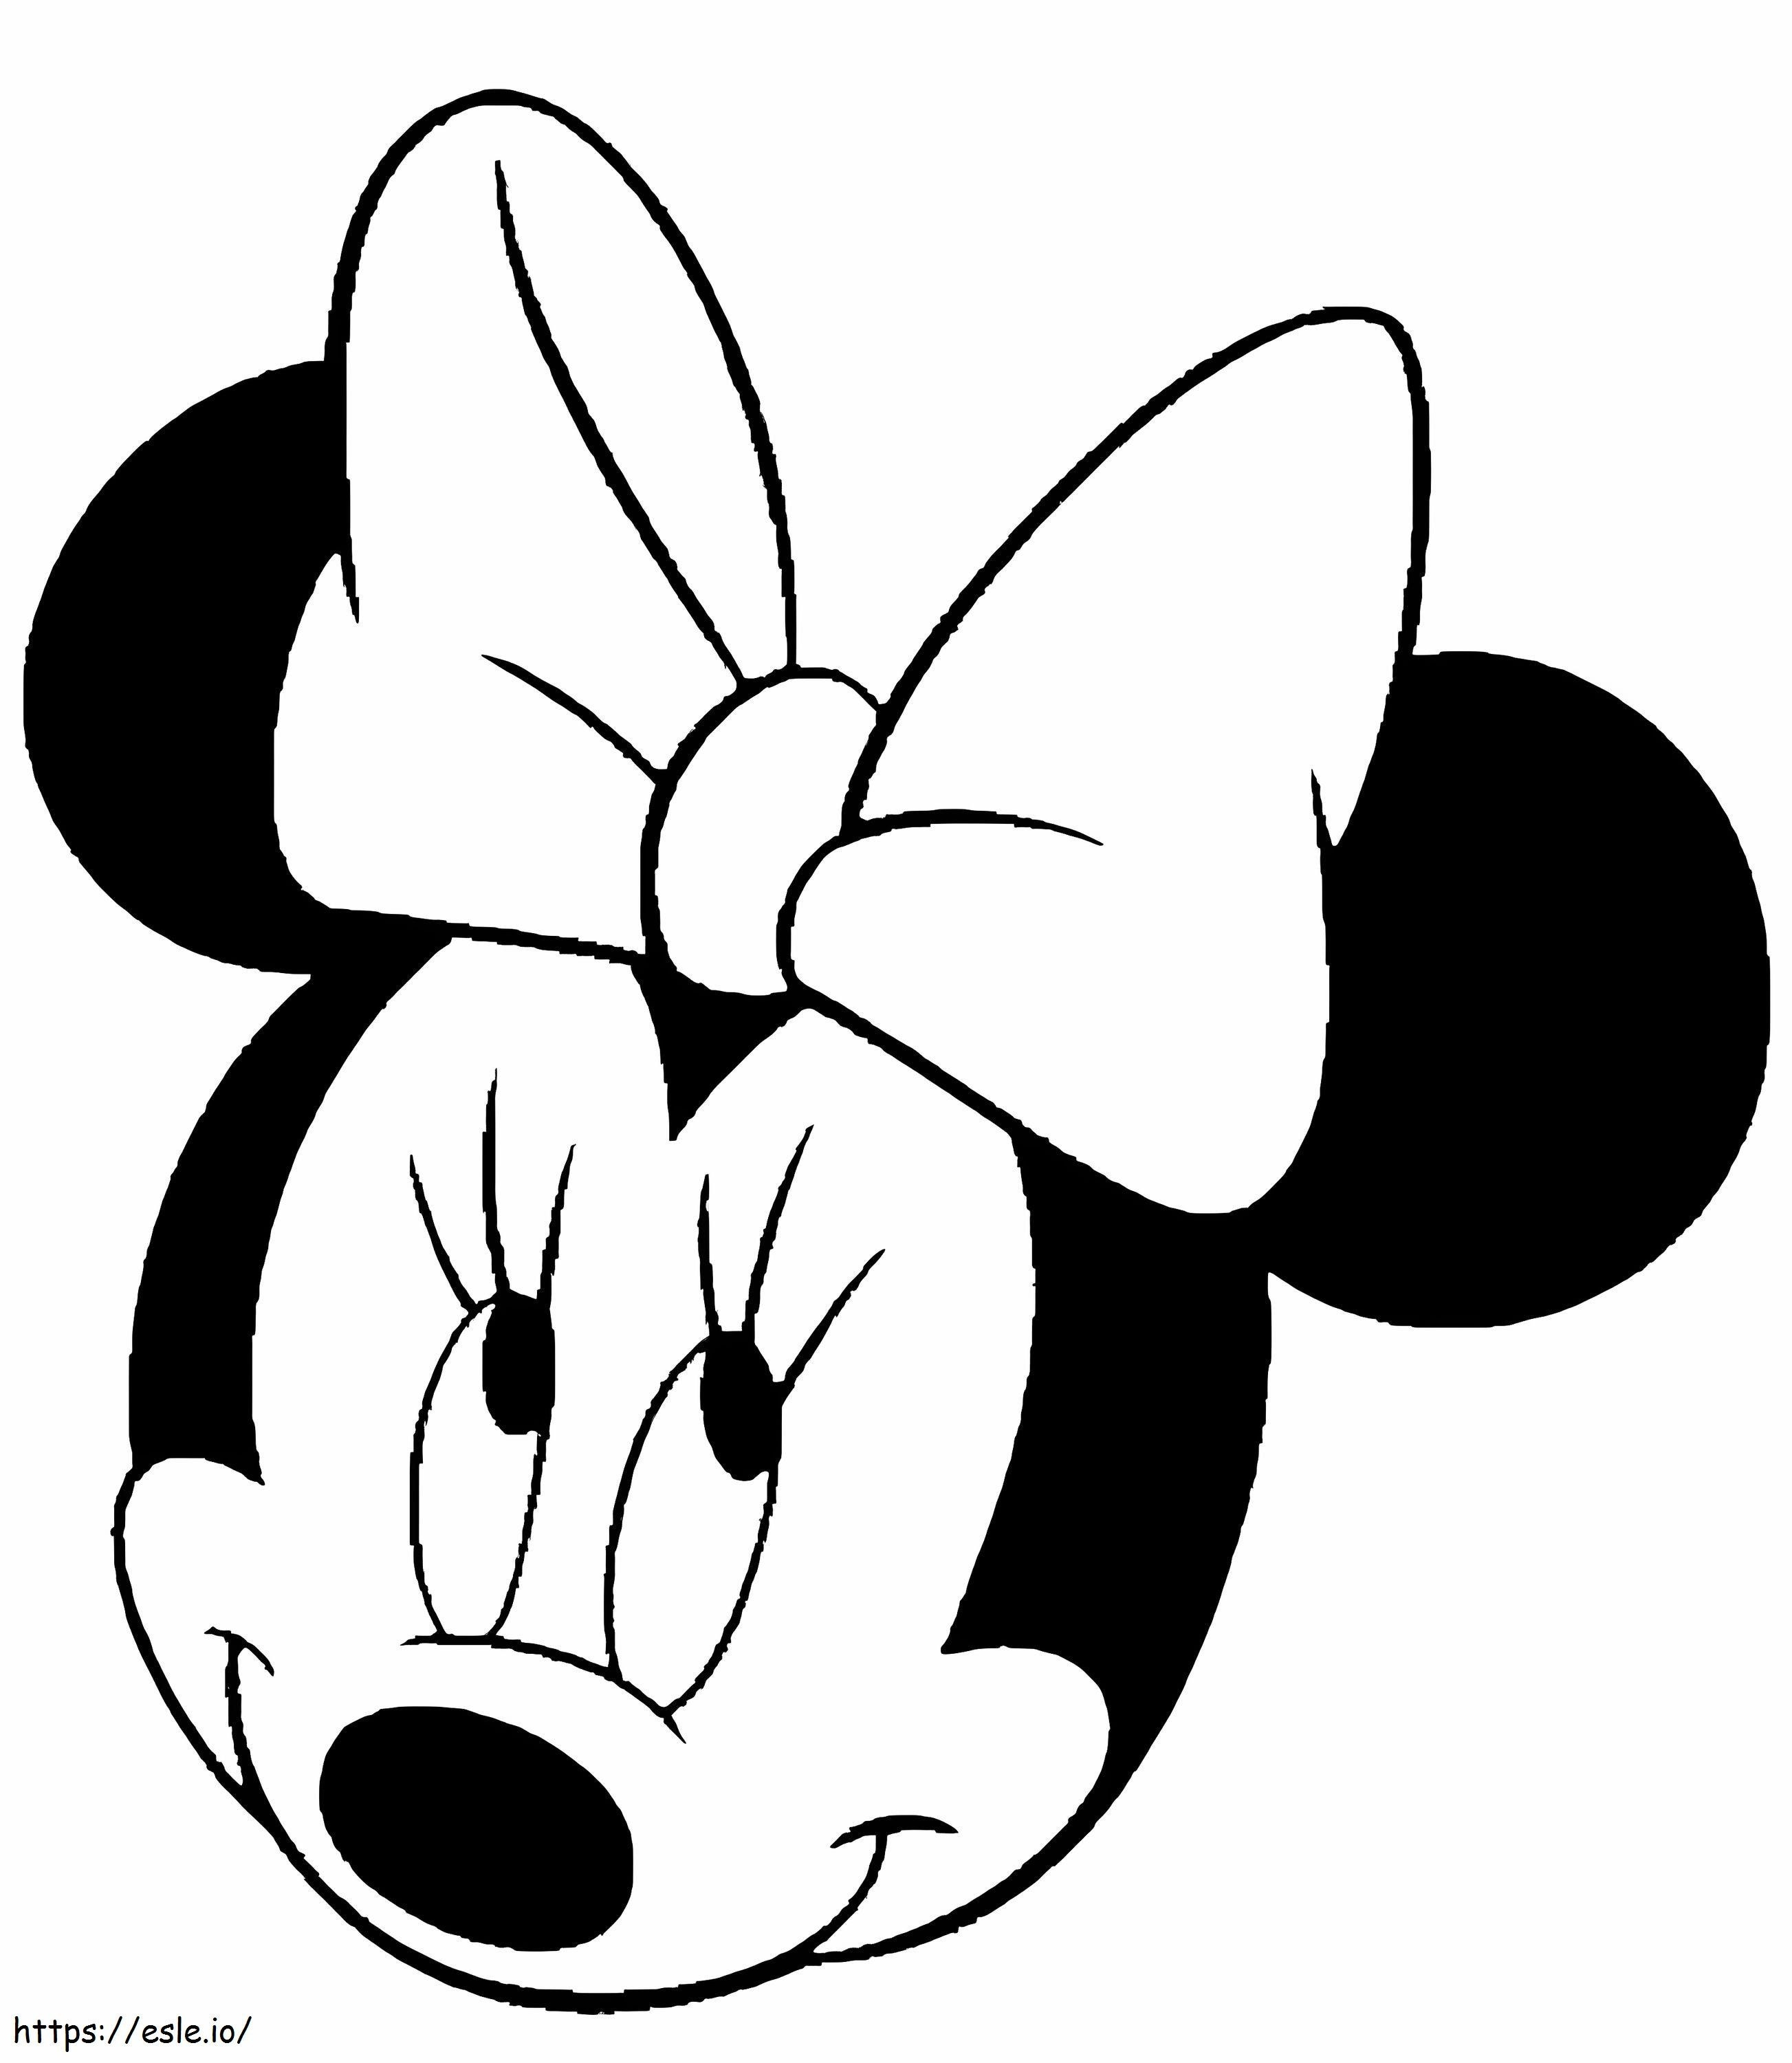 Testa sorridente di Minnie Mouse da colorare